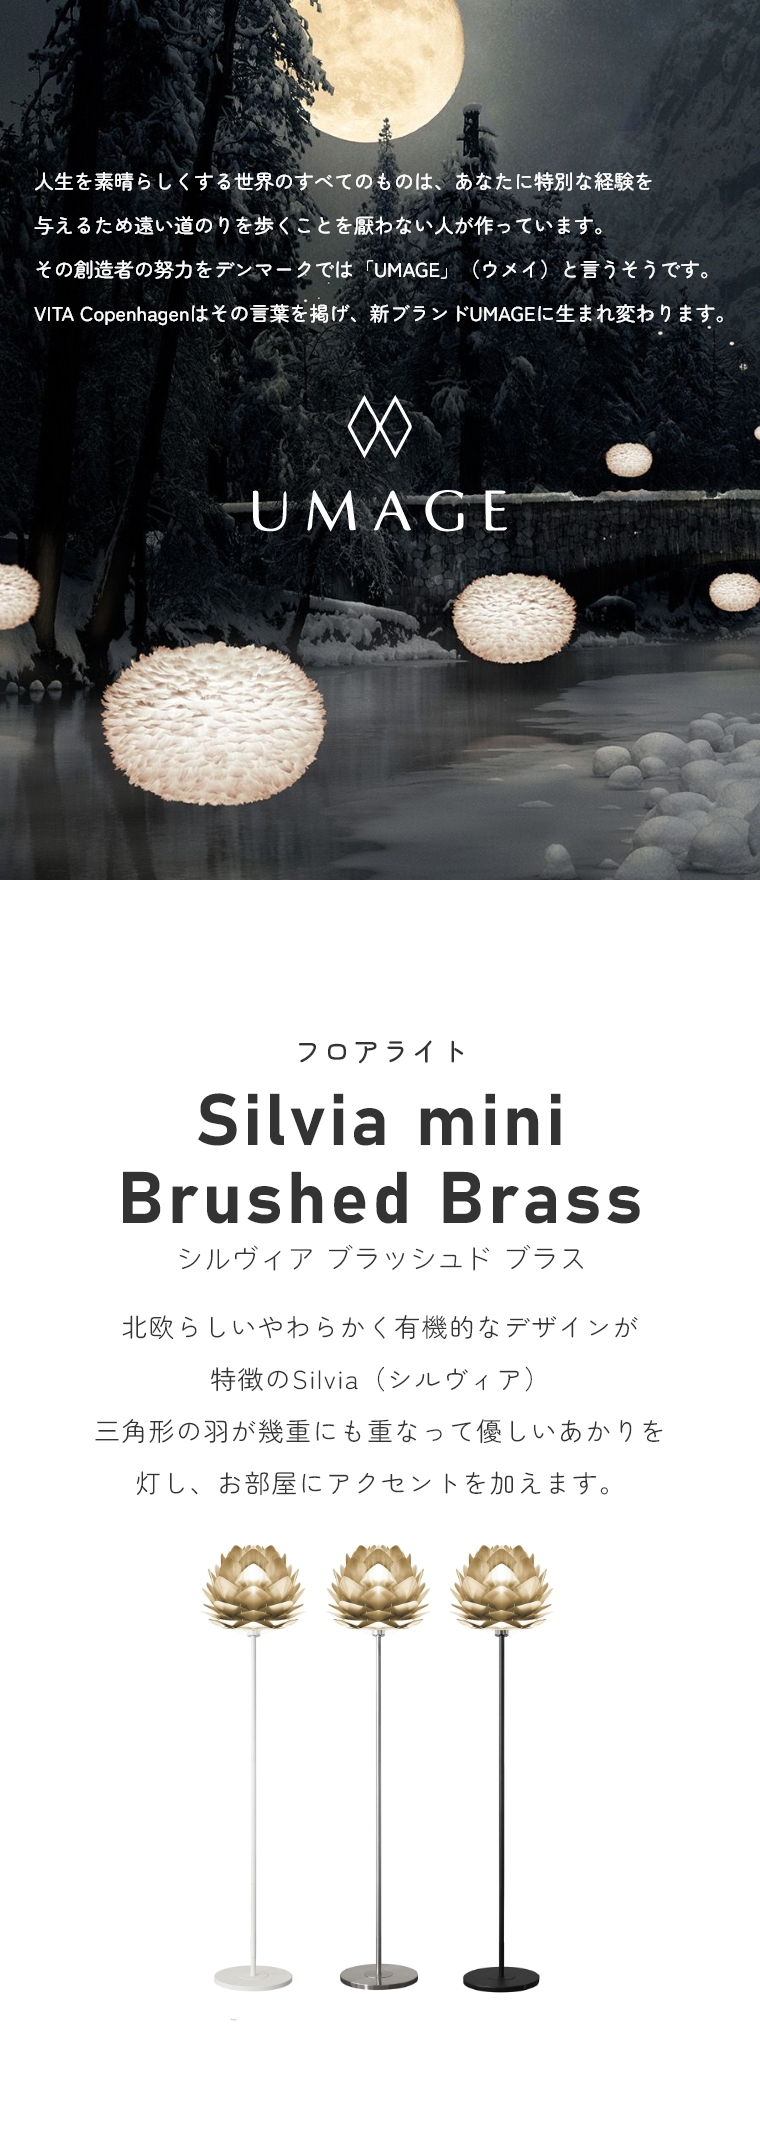 keCXg̃VvȃCg UMAGE(EC) Silvia mini Brushed BrassiVBA~jubVhuXj tAX^hCg 2071 GbNX